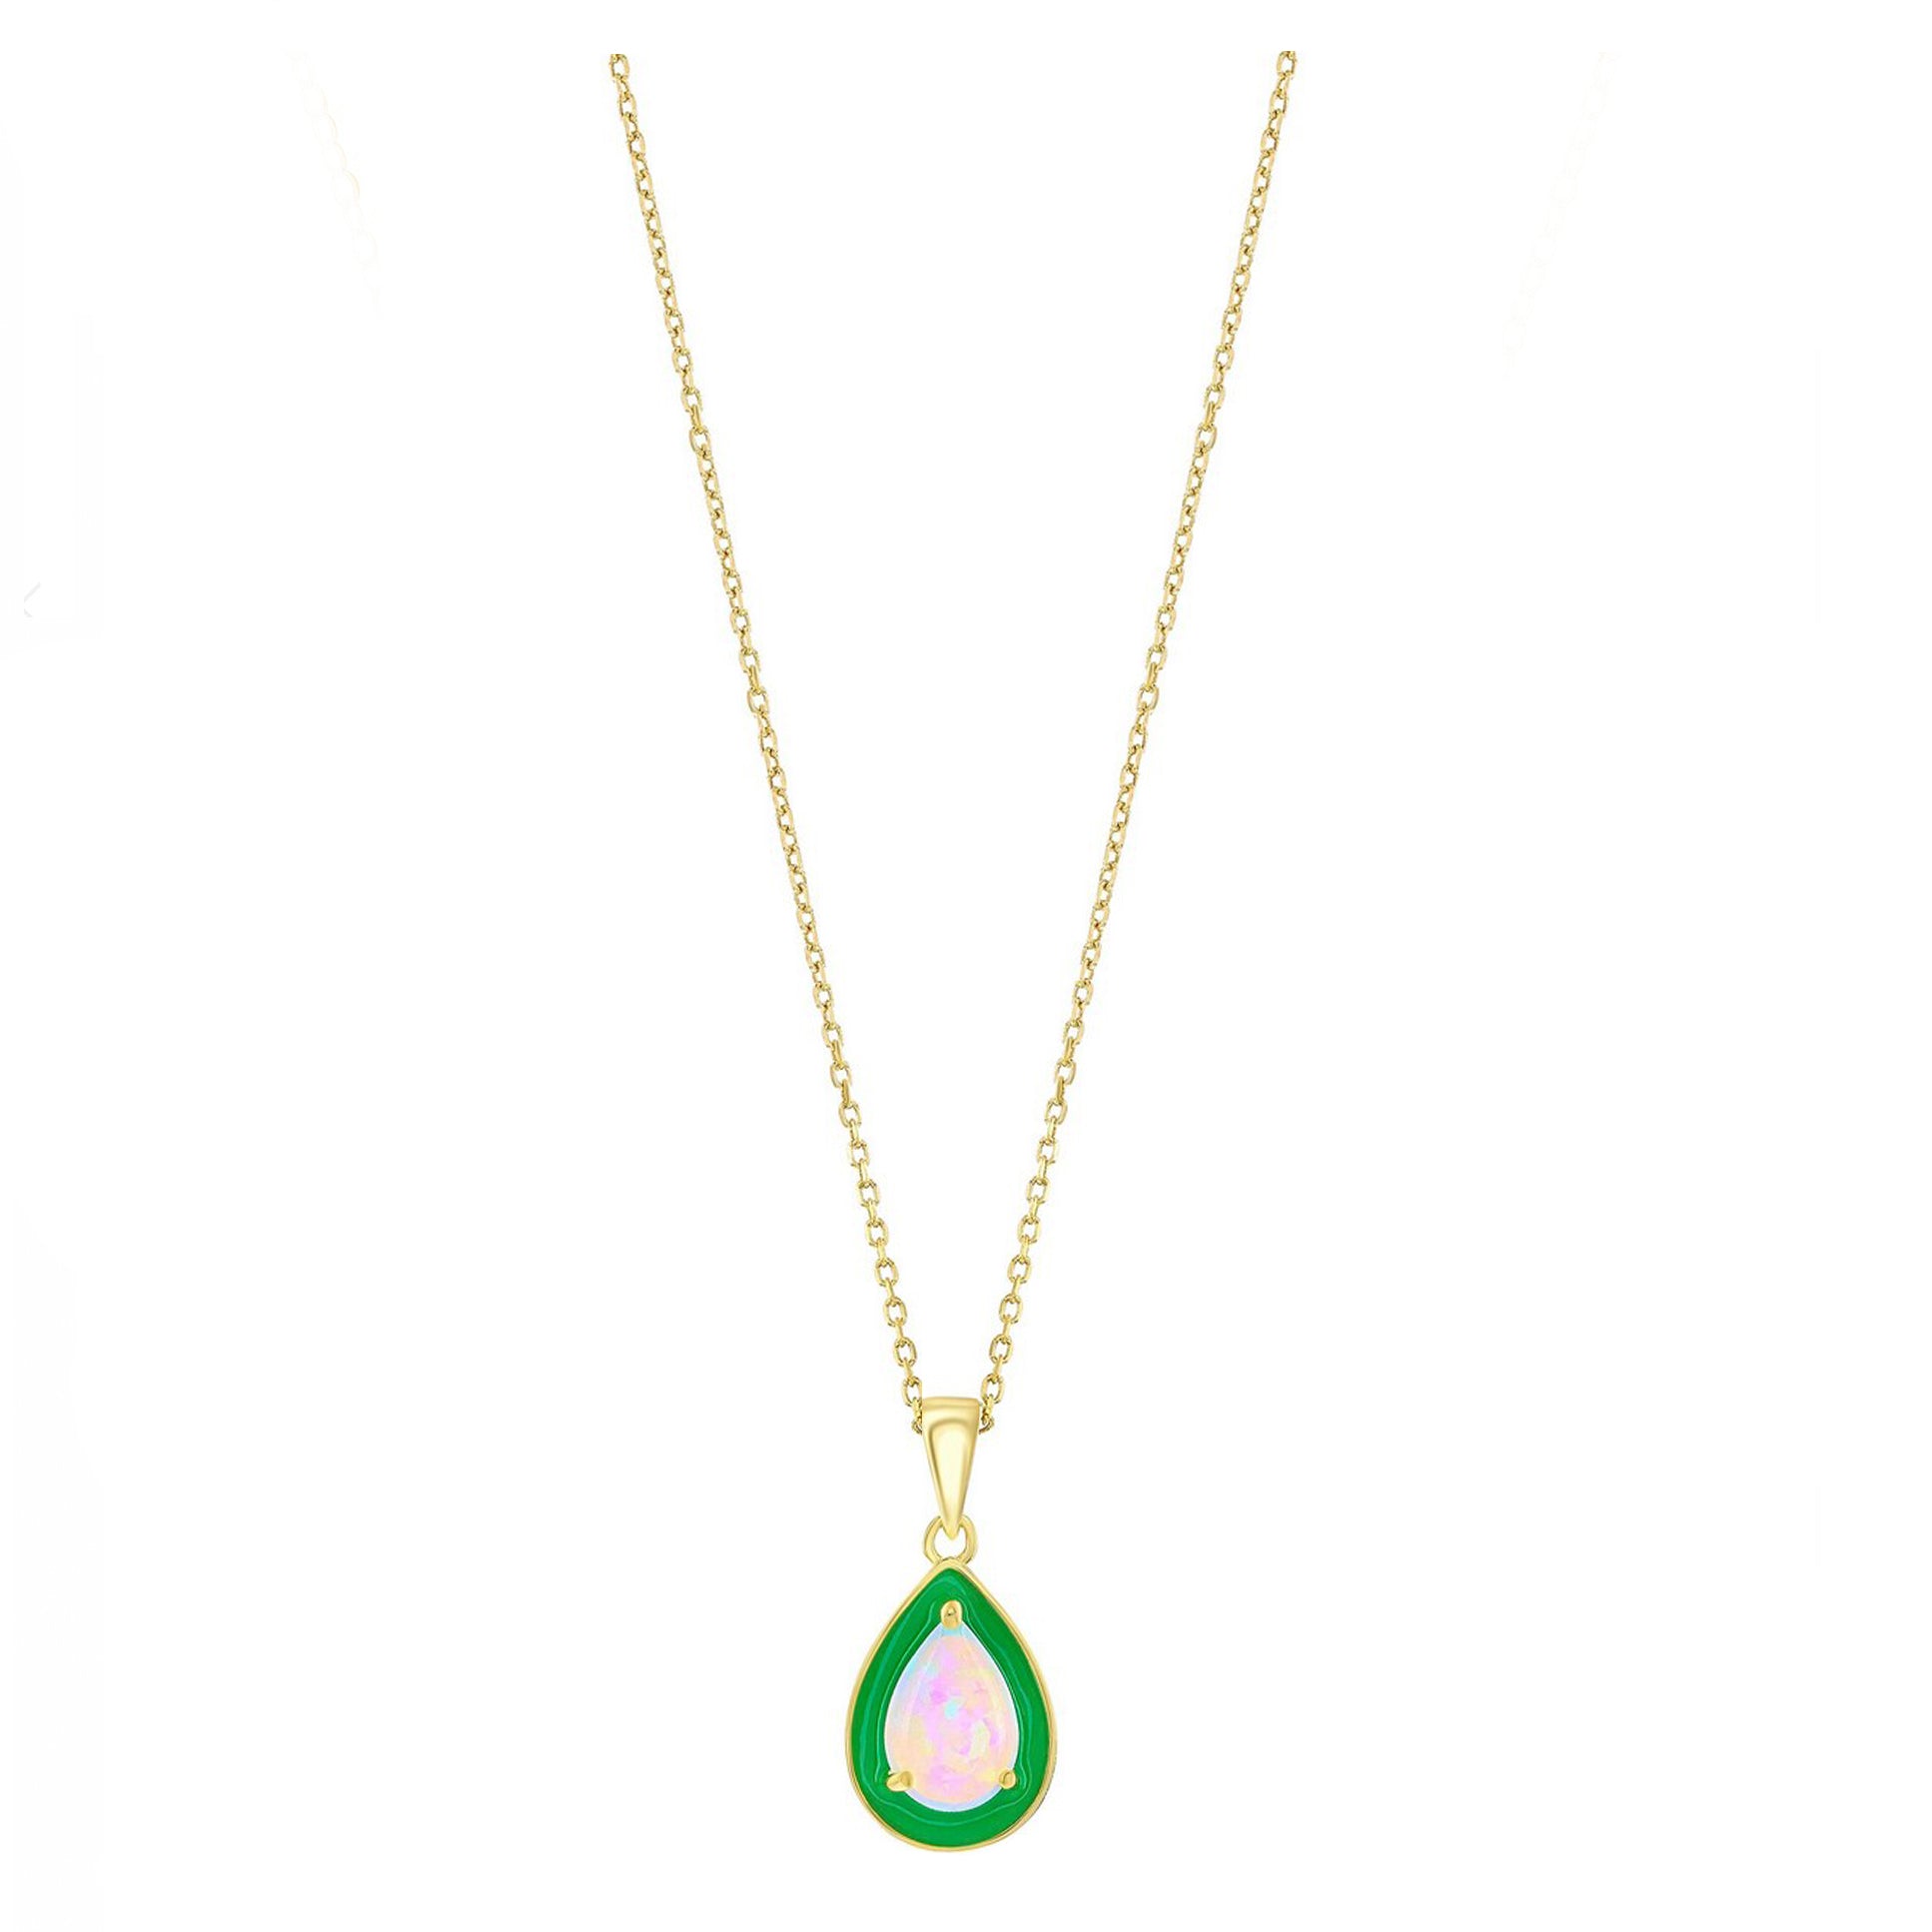 Pear-shaped Opal Green Enamel Necklace